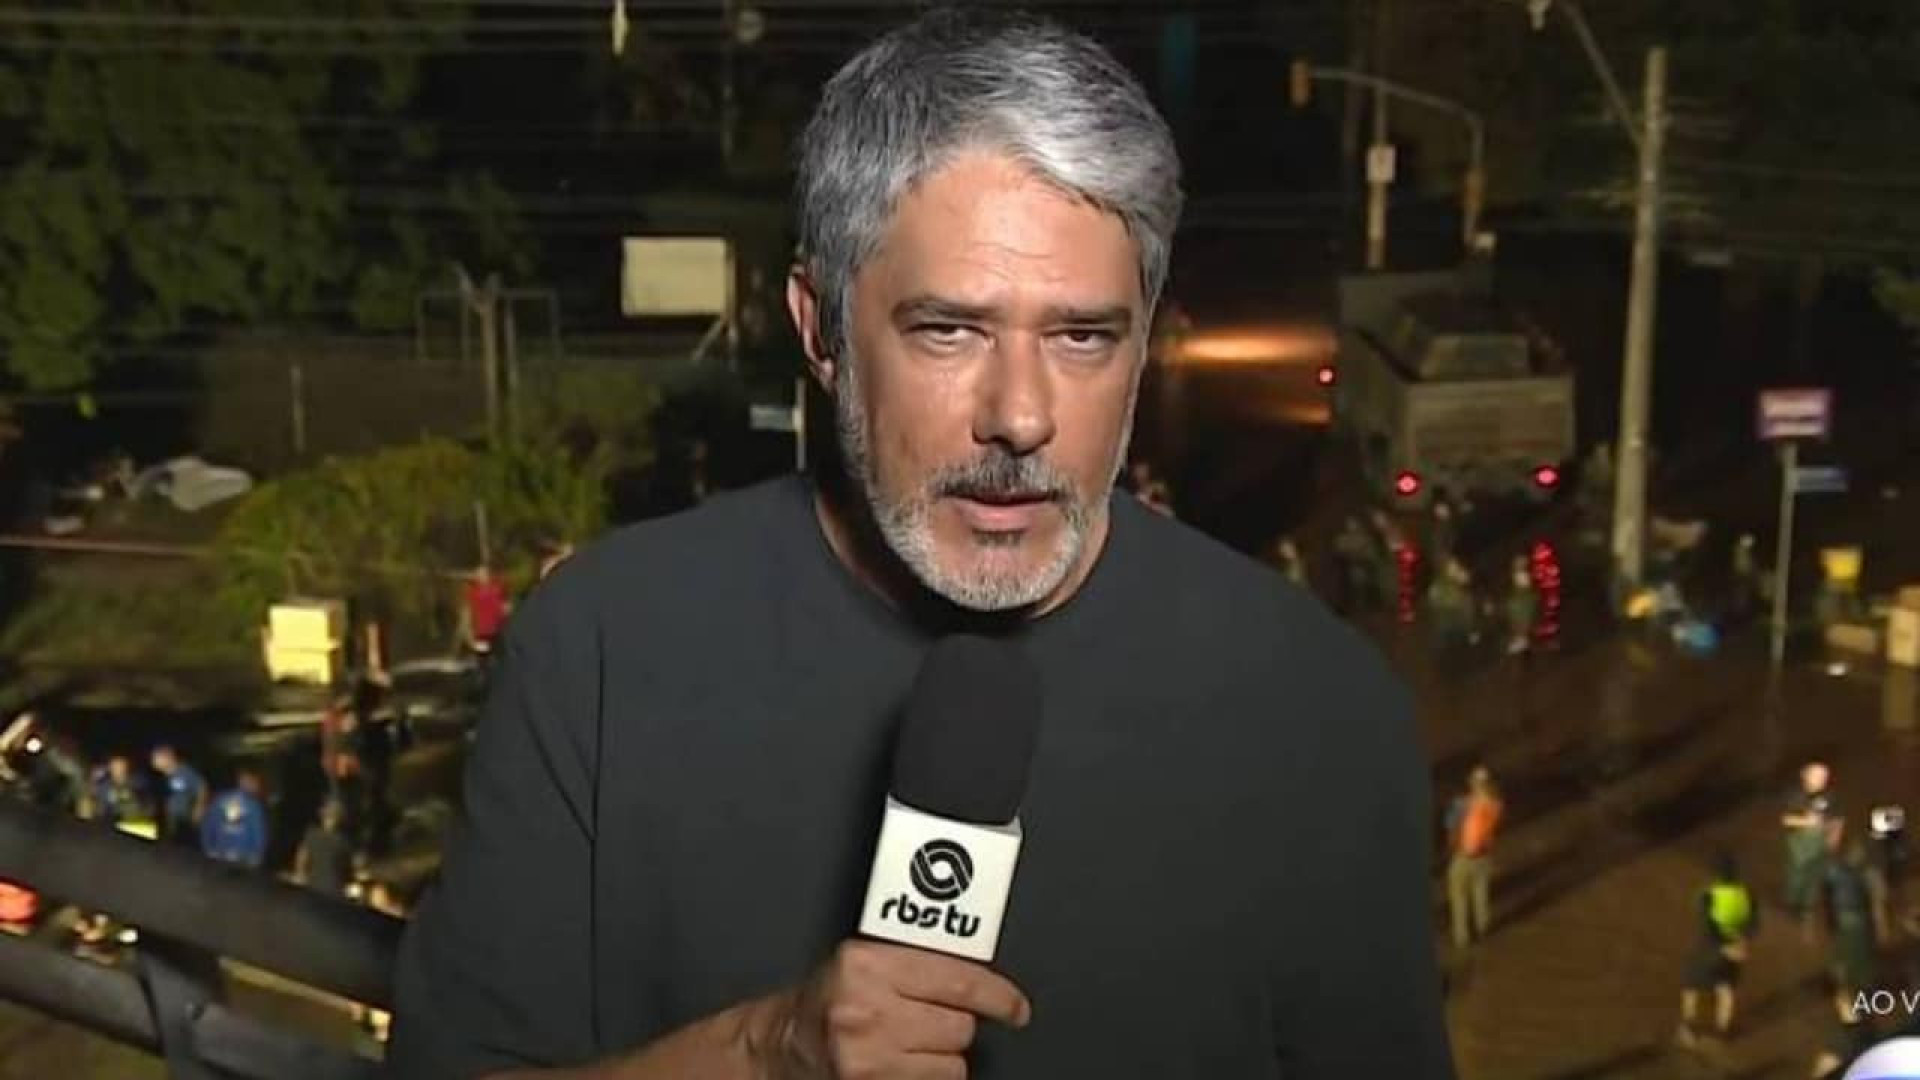 Globo muda planos e deixa William Bonner até fim da semana em cobertura de tragédia do RS